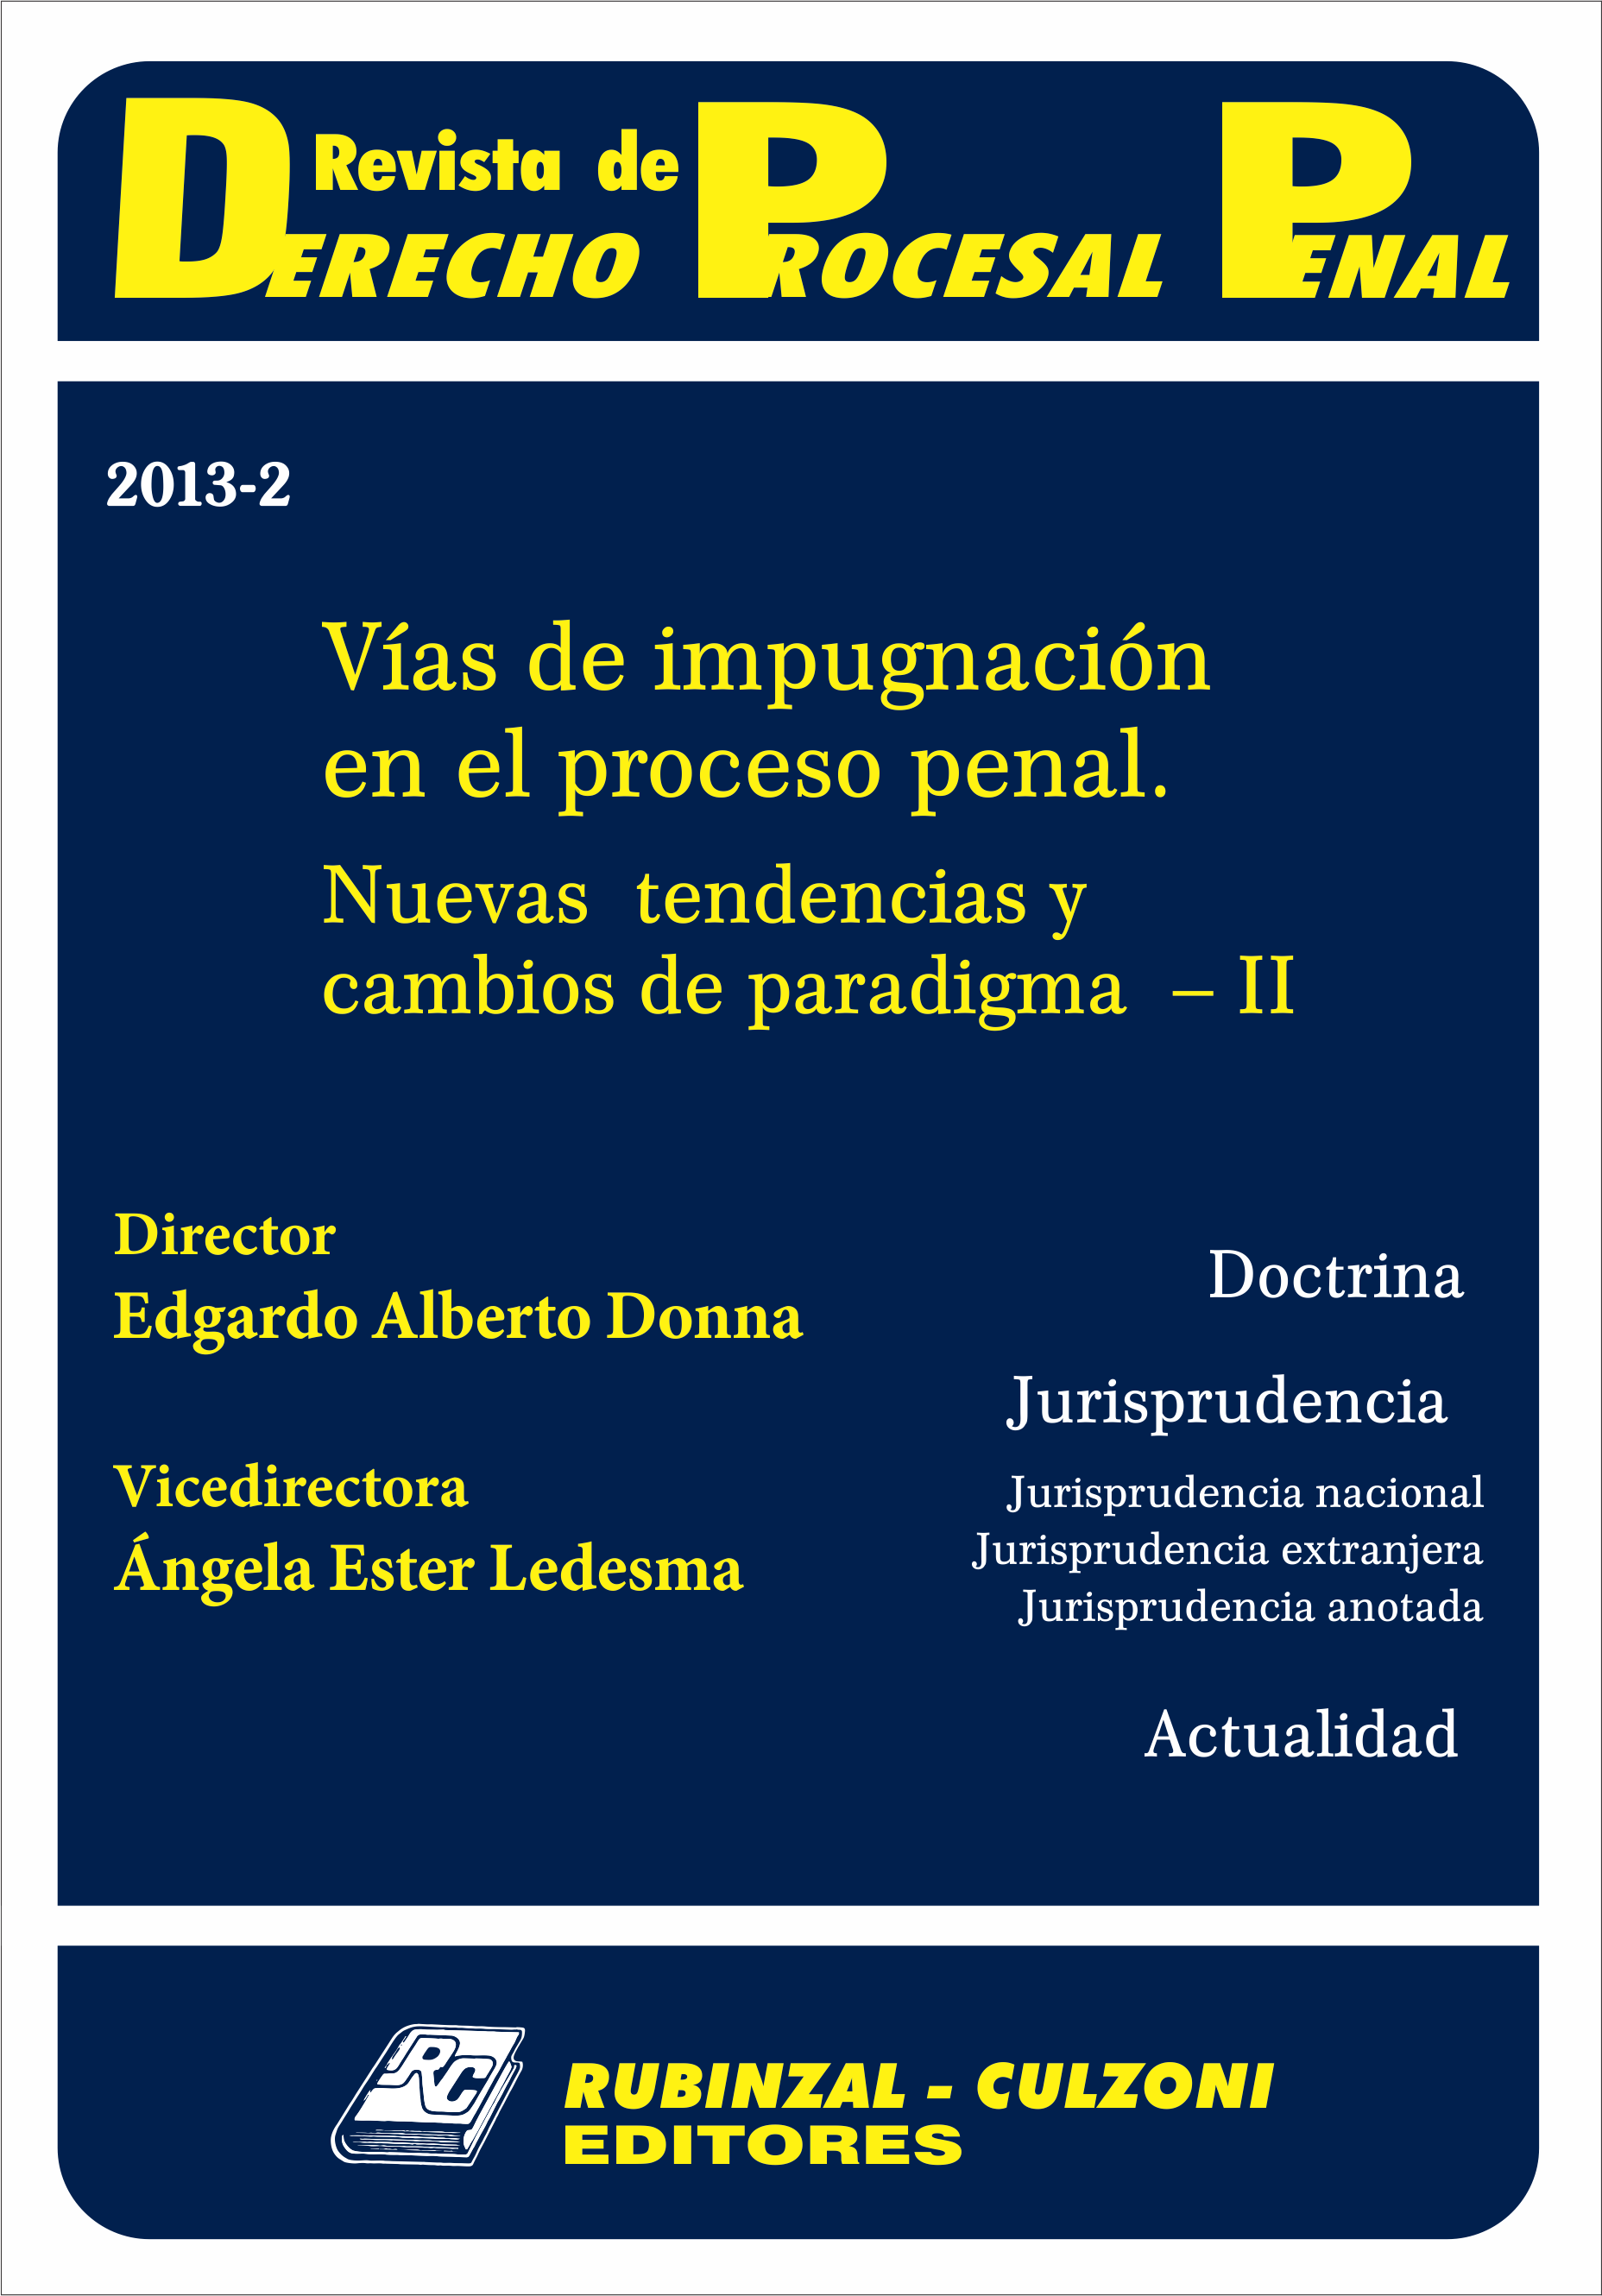 Revista de Derecho Procesal Penal - Vías de impugnación en el proceso penal